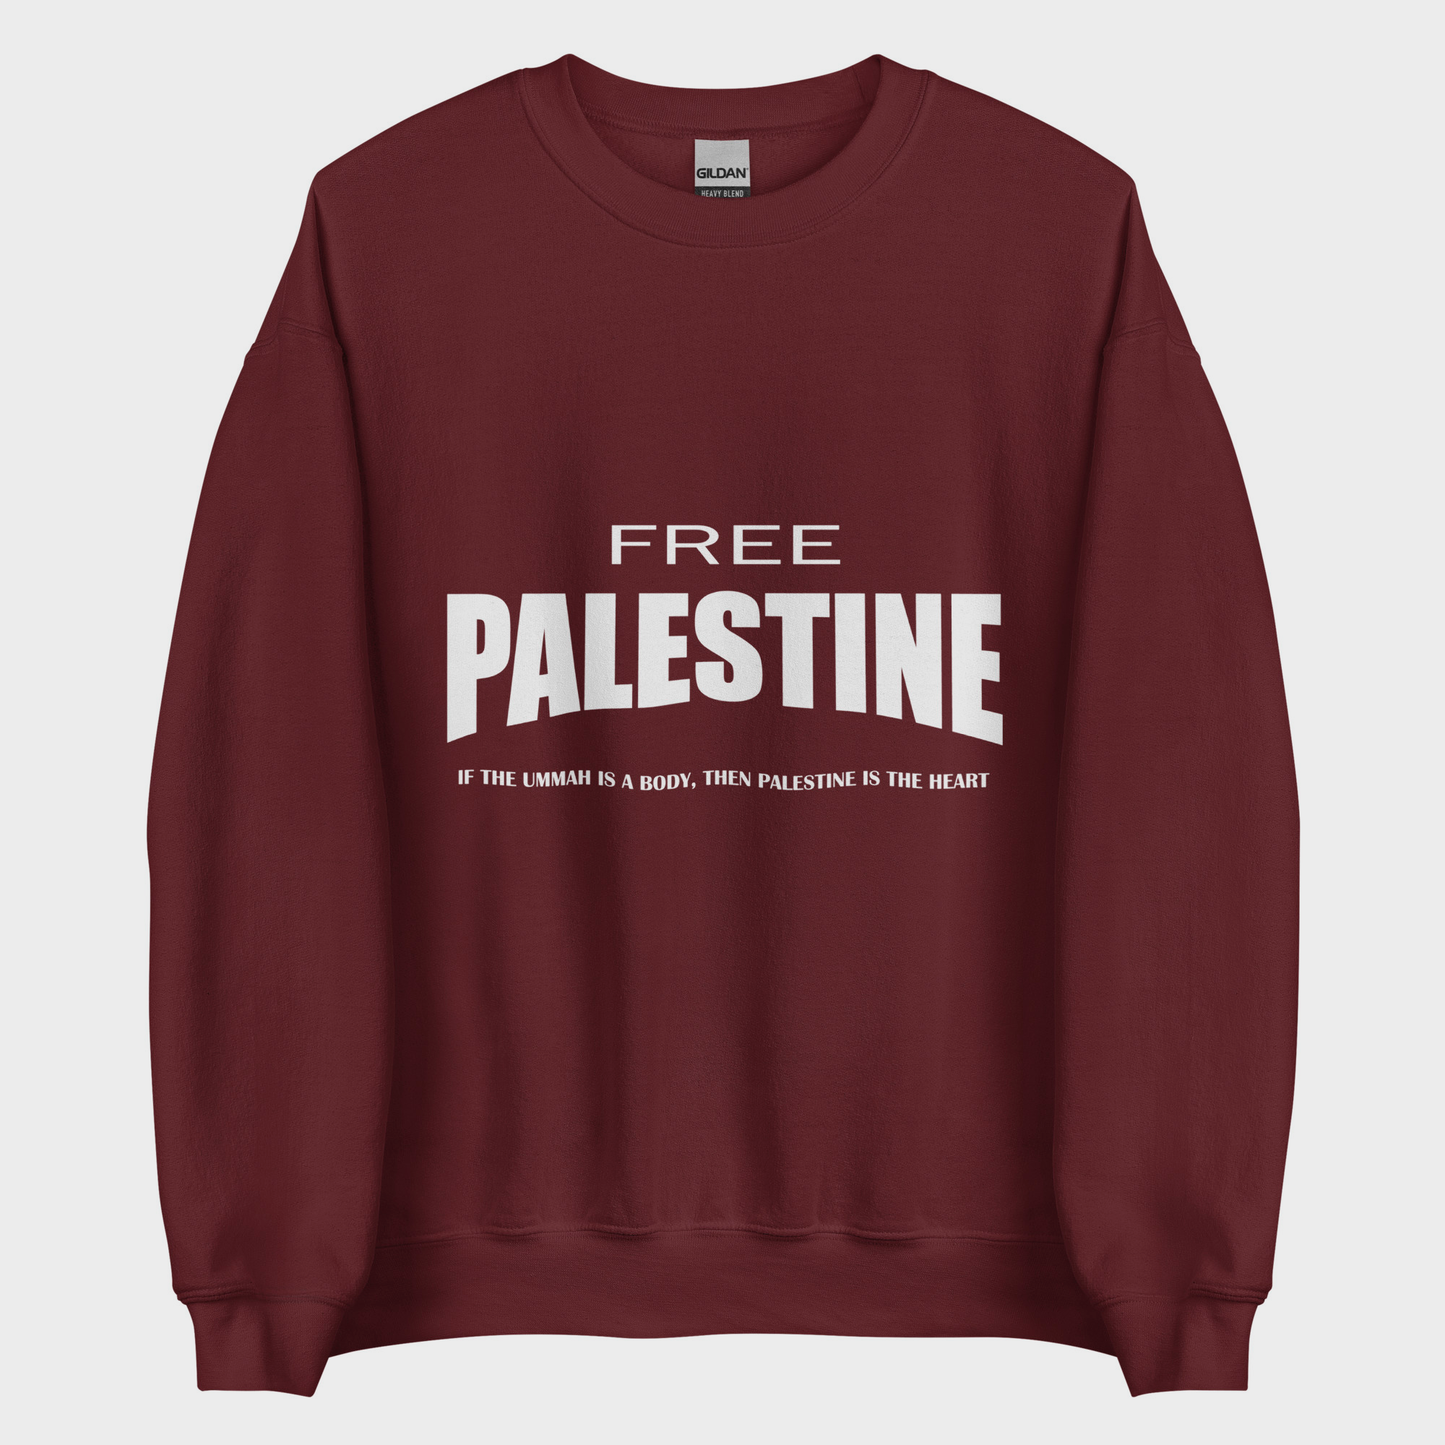 Sudadera Clásica Free Palestine - Granate